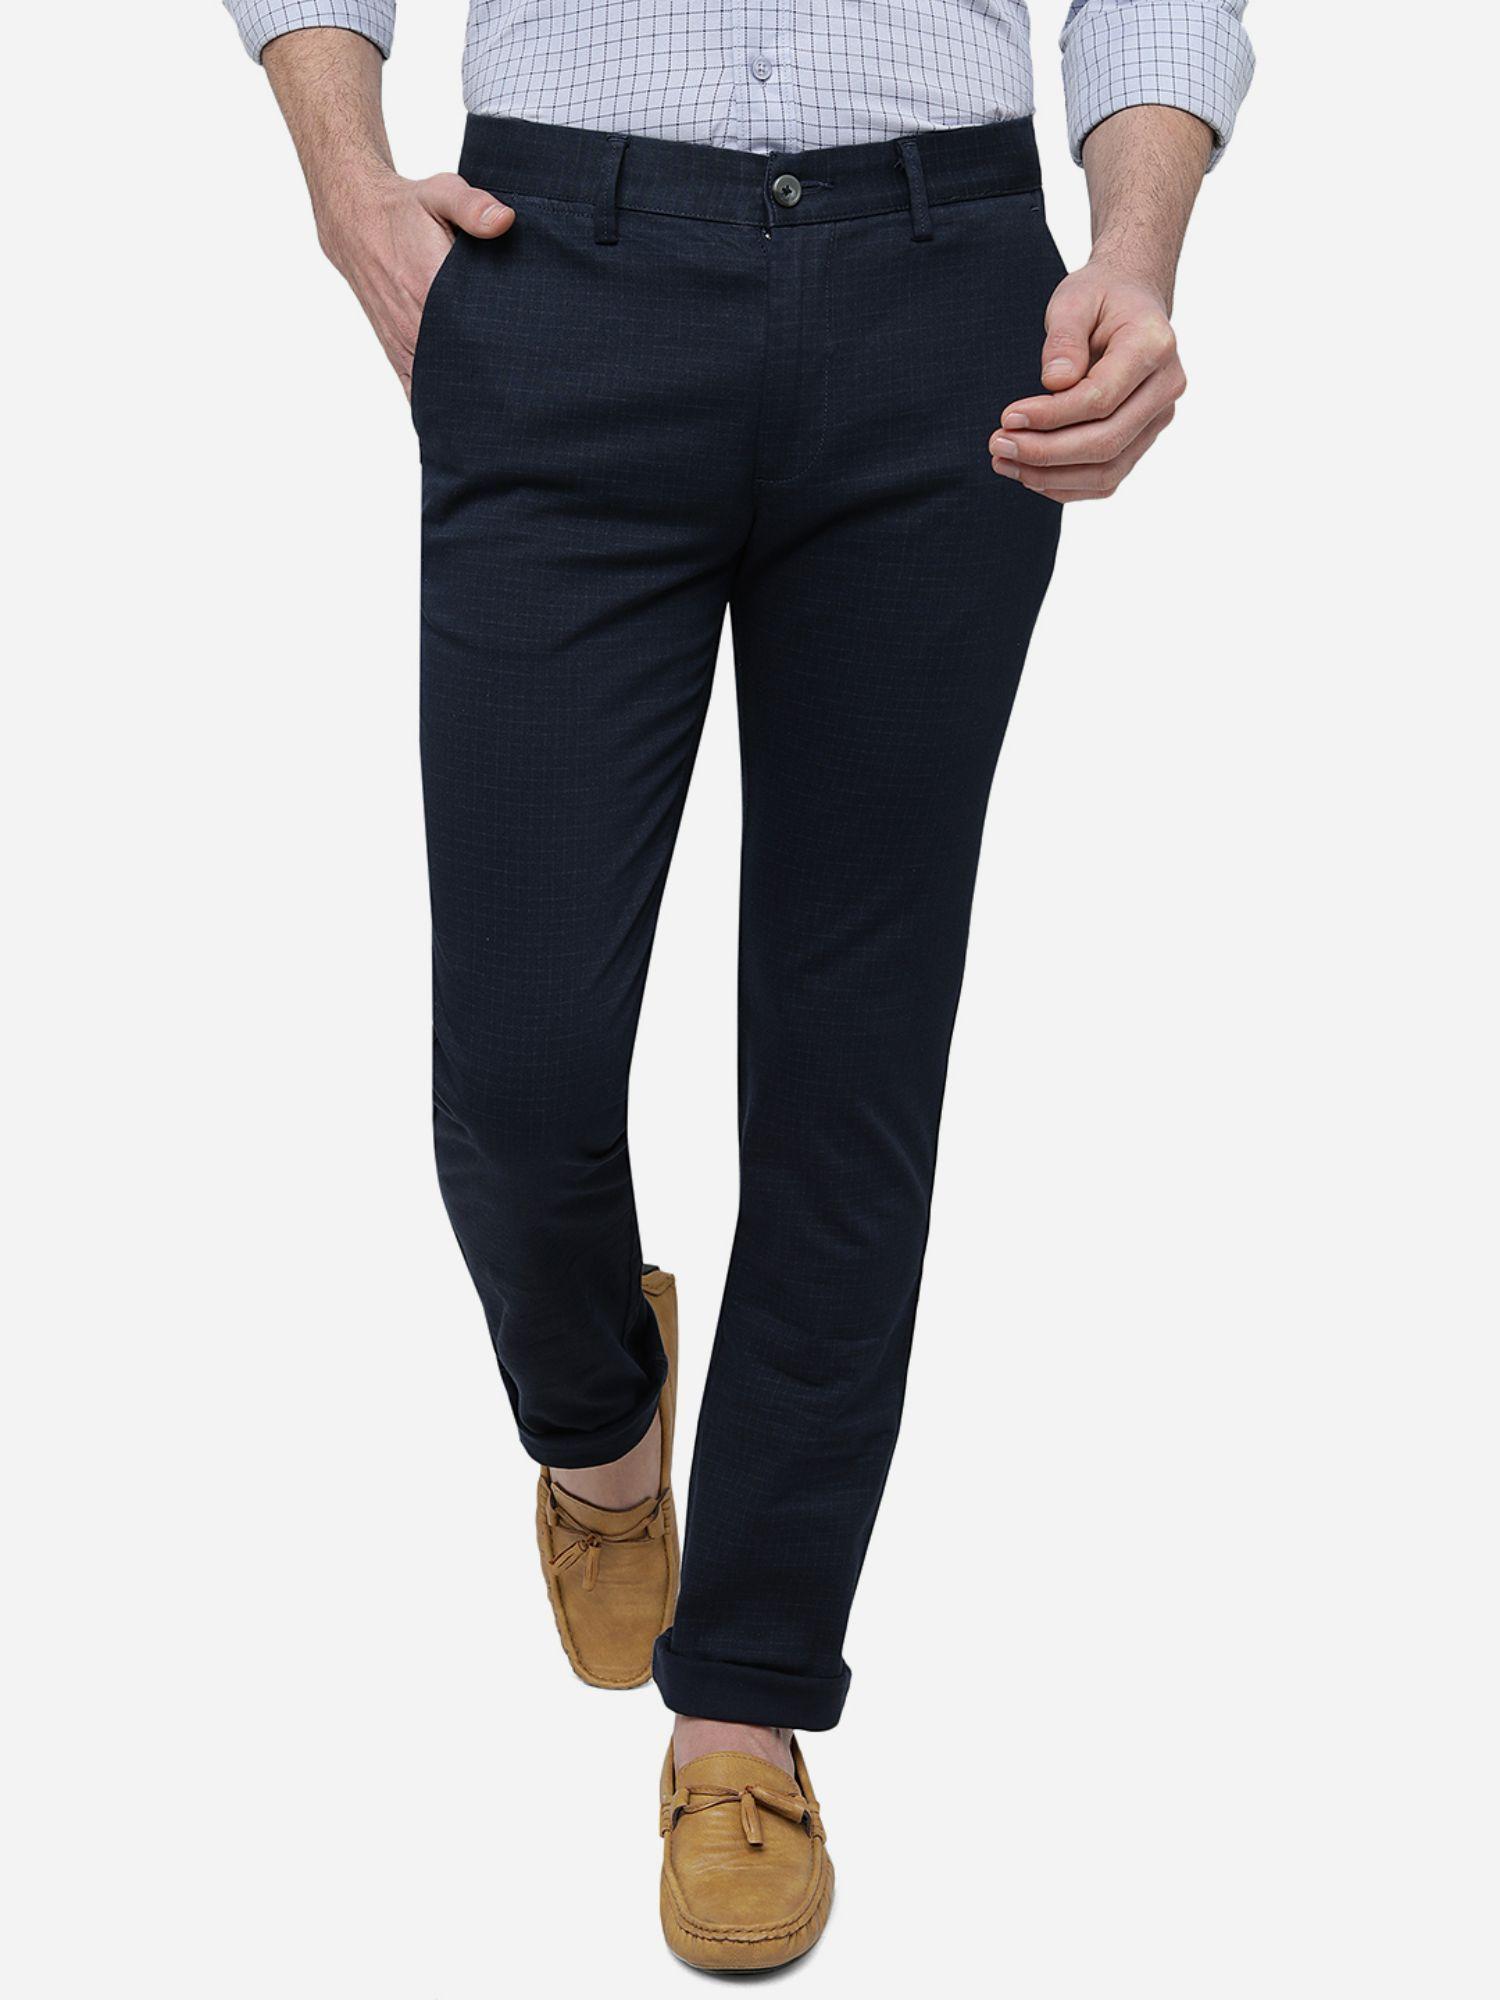 men's solid navy blue cotton super slim fit casual trouser